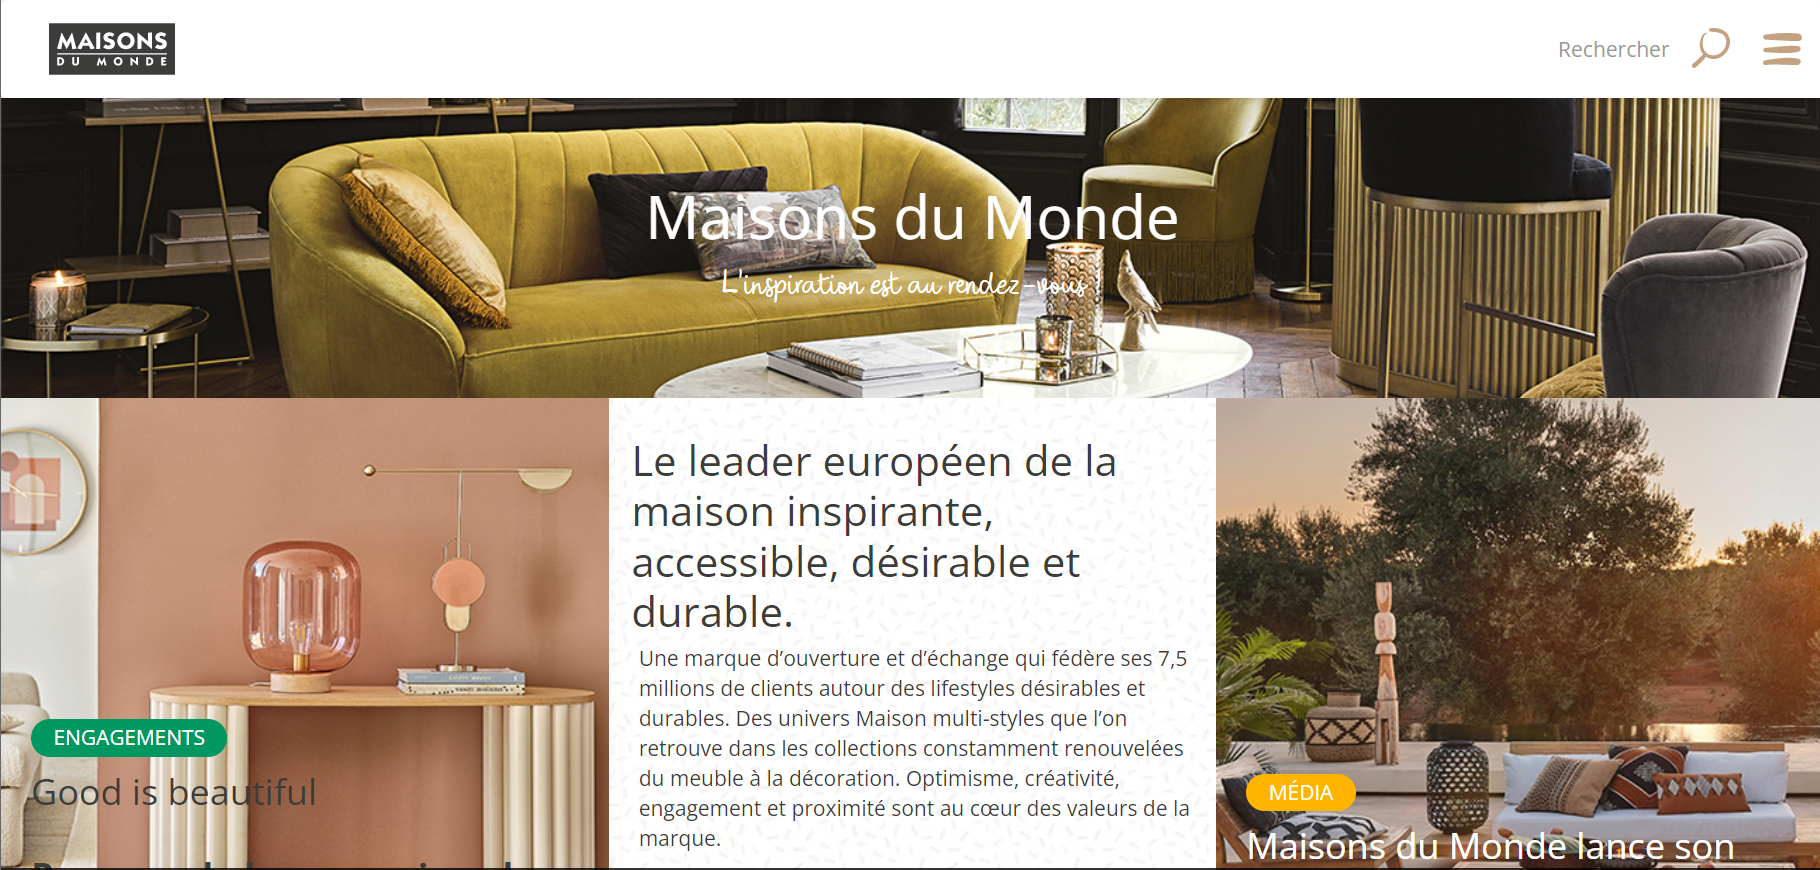 法国家具零售商 Maisons du Monde 2022上半财年销售额同比下降4.8%，至6.039亿欧元